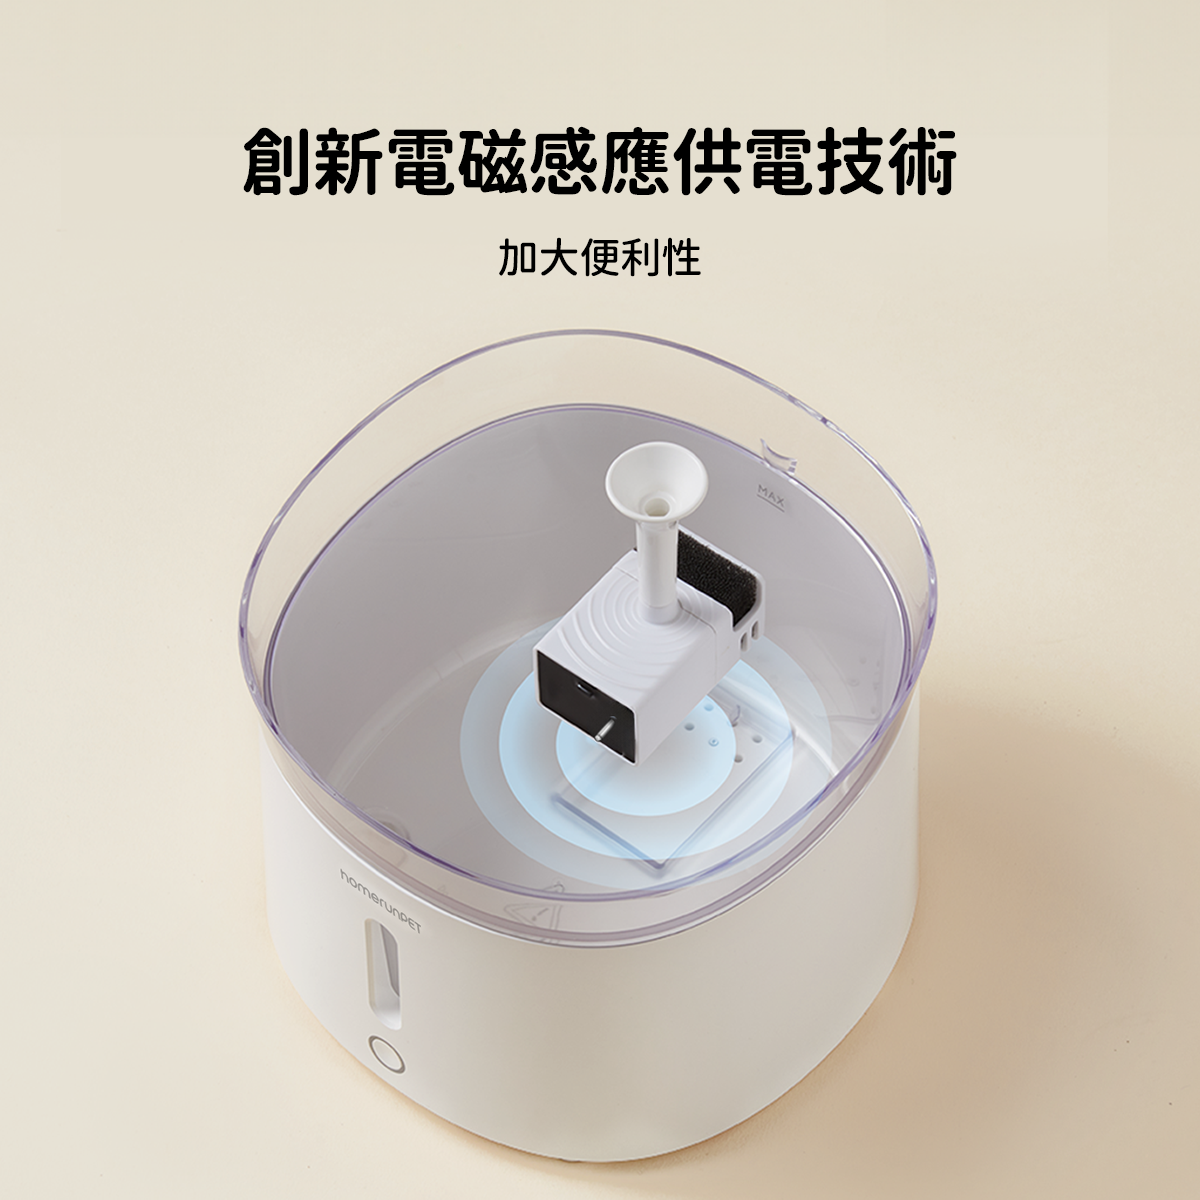 霍曼三代飲水機無線水泵套裝  Homerunpet Taiwan   